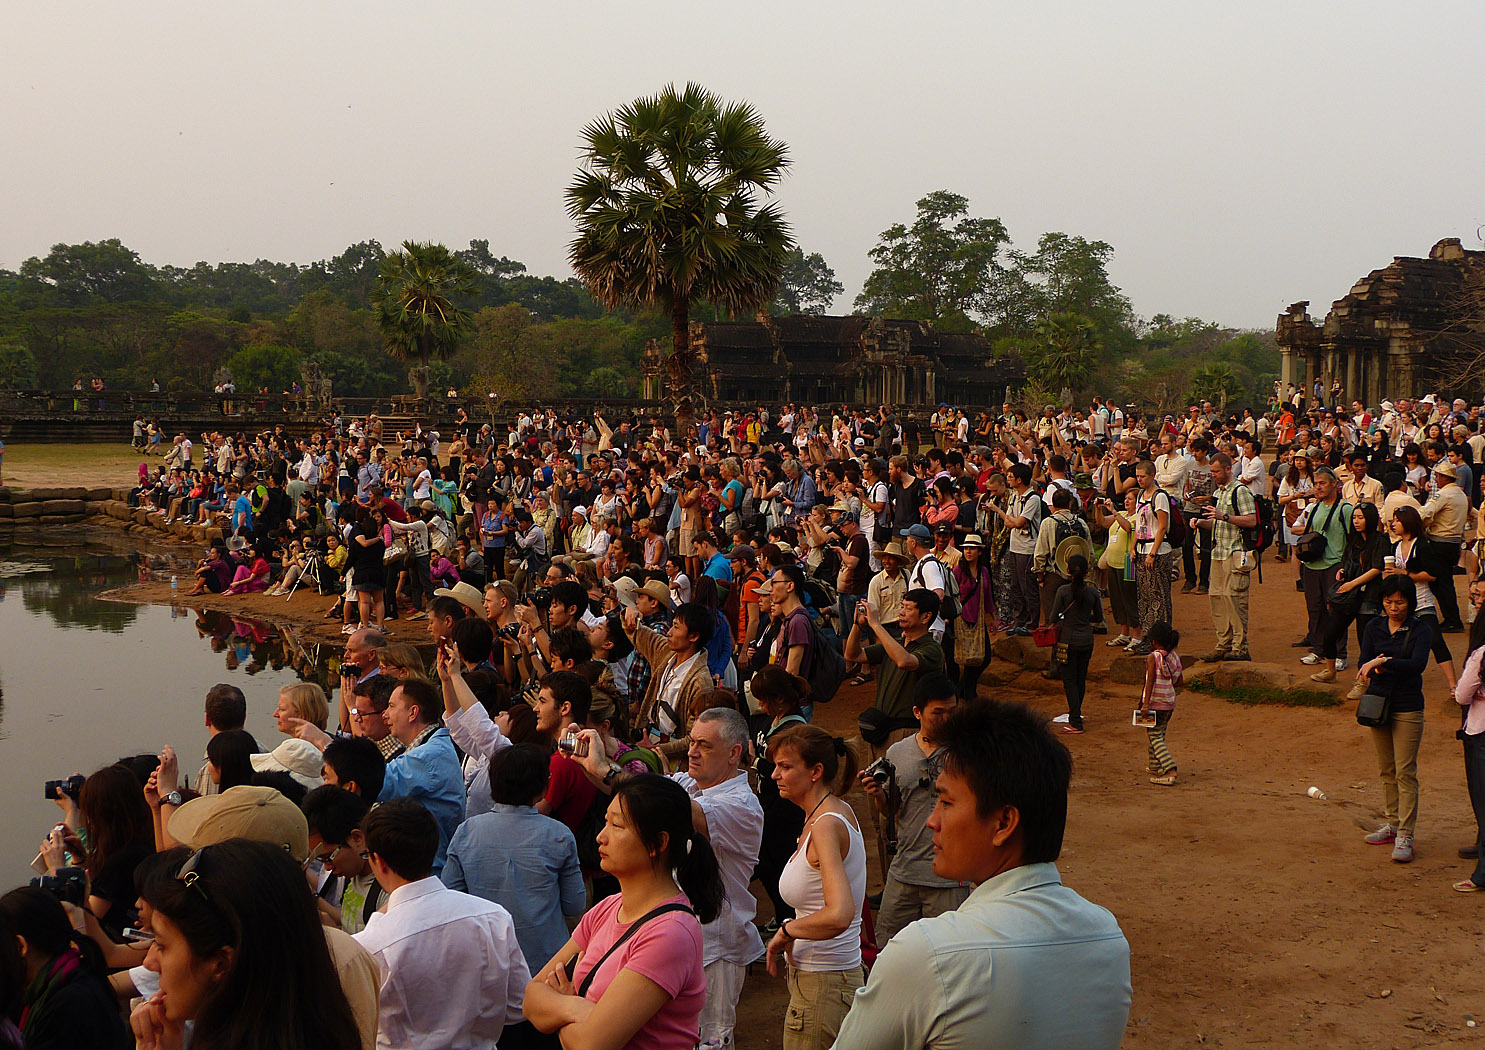 Crowd watching sunrise at Angkor Wat, Cambodia